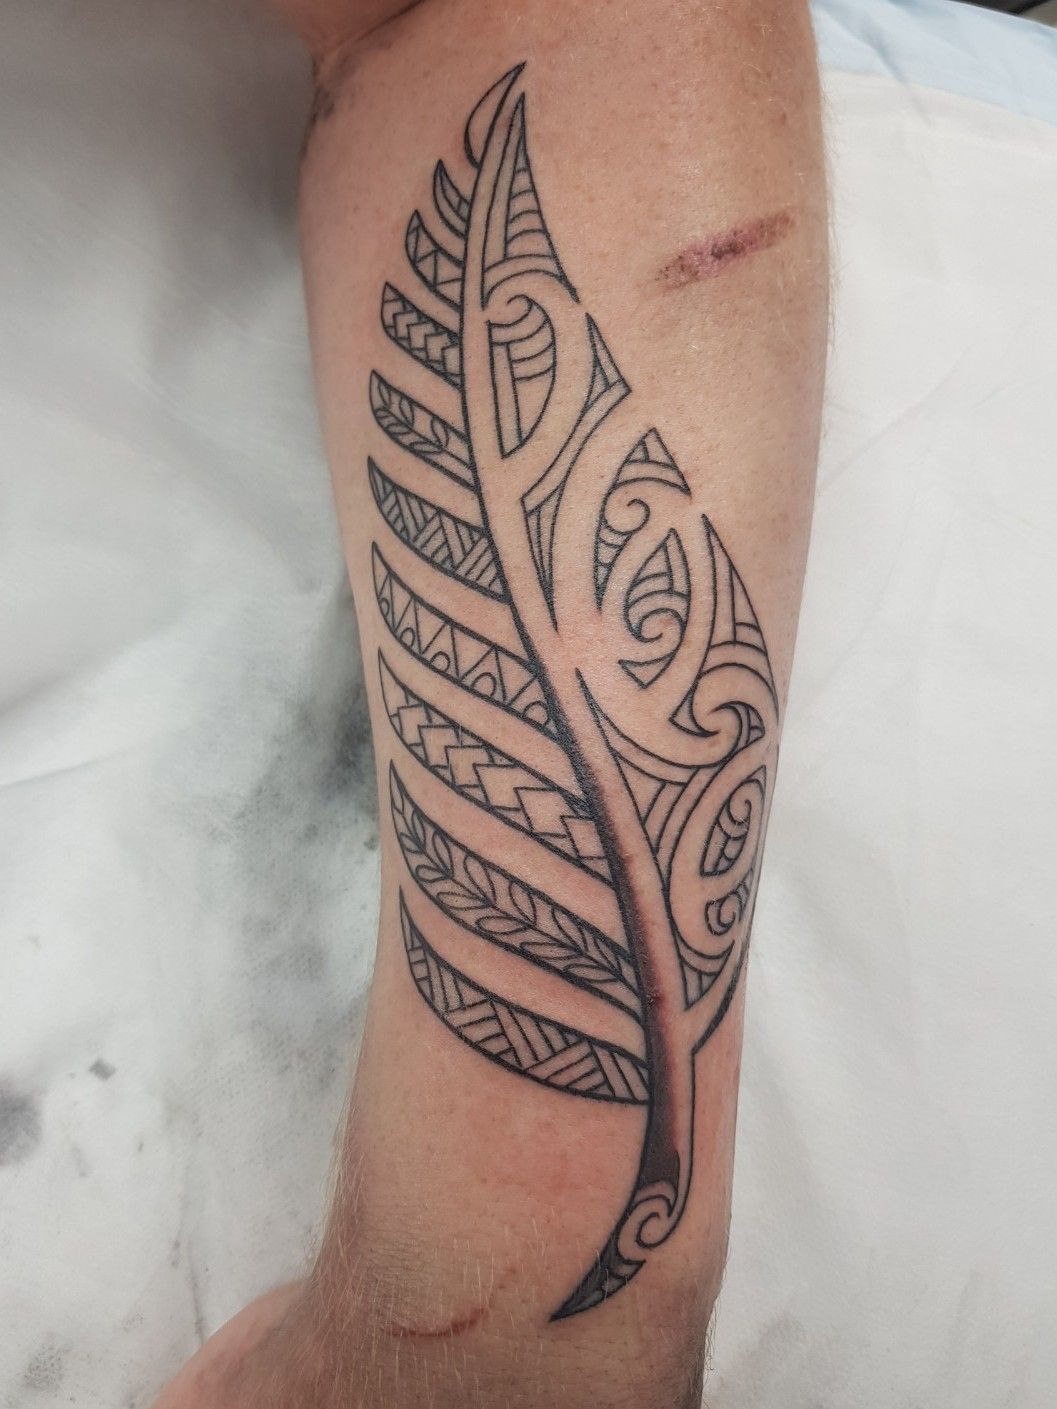 Traditonal Maori silverfern tattoo design with red elements